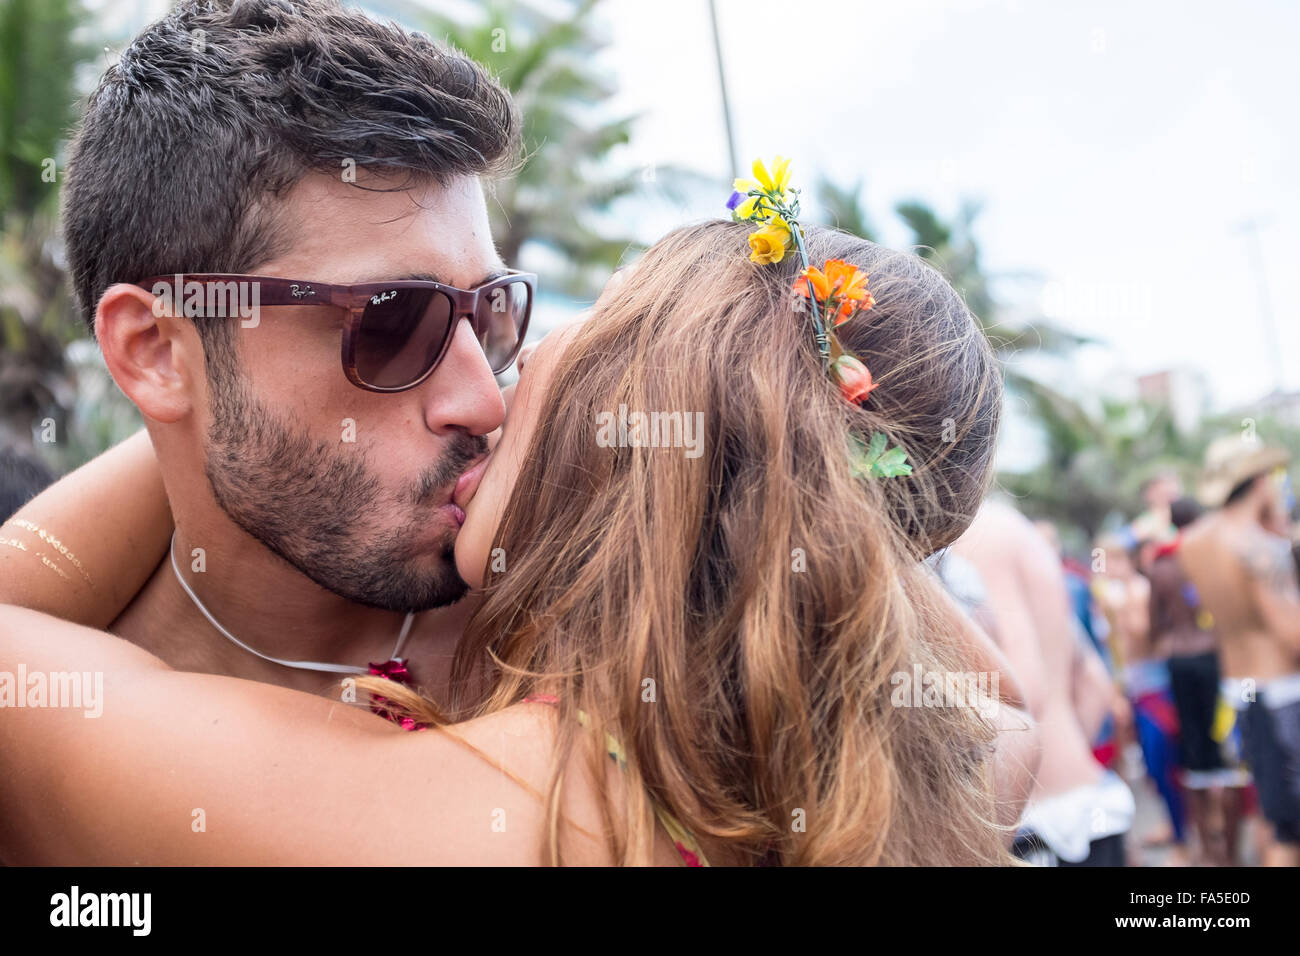 Río de Janeiro, Brasil - 14 de febrero de 2015: el joven matrimonio brasileño besos en medio de una comparsa de carnaval fiesta en la calle. Foto de stock